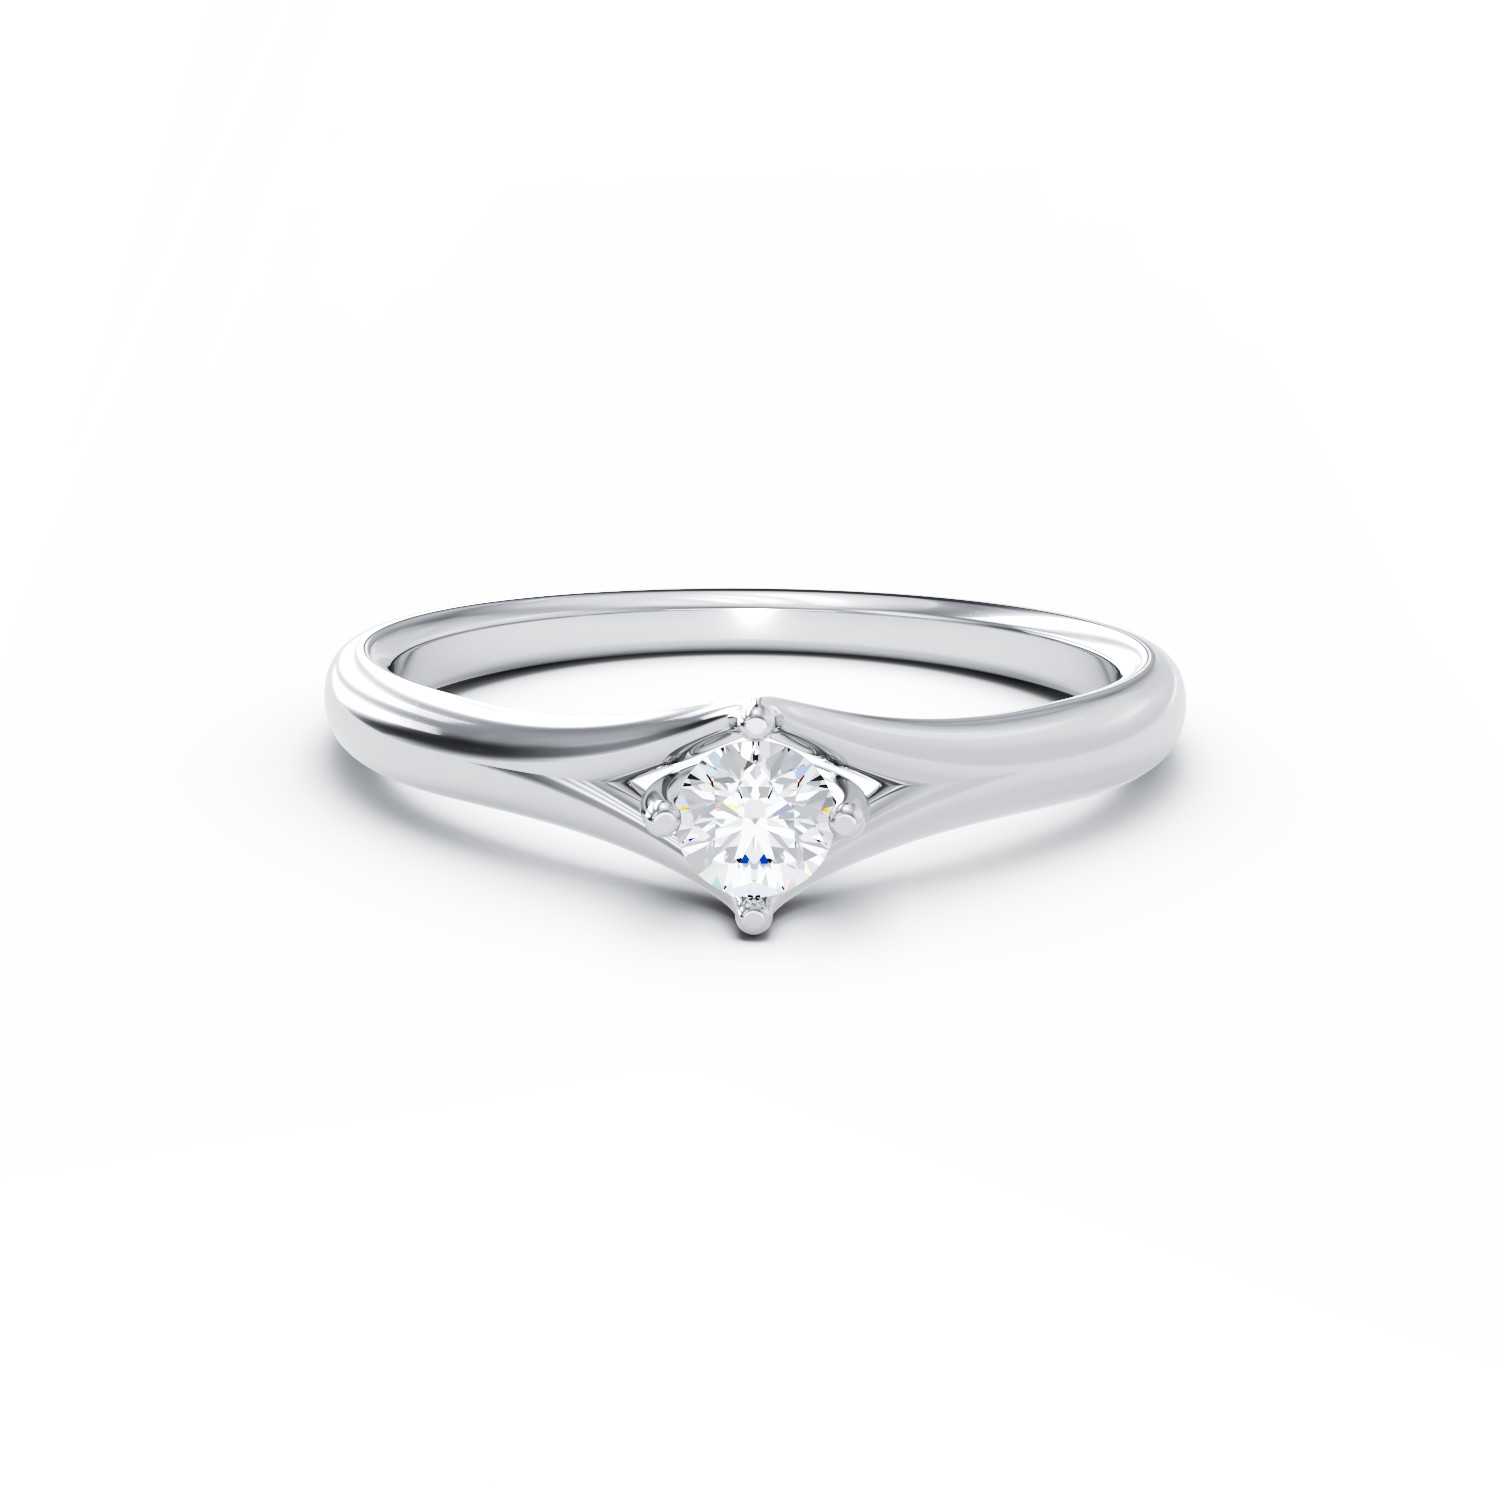 Inel de logodna din aur alb de 18K cu un diamant solitaire de 0.1ct